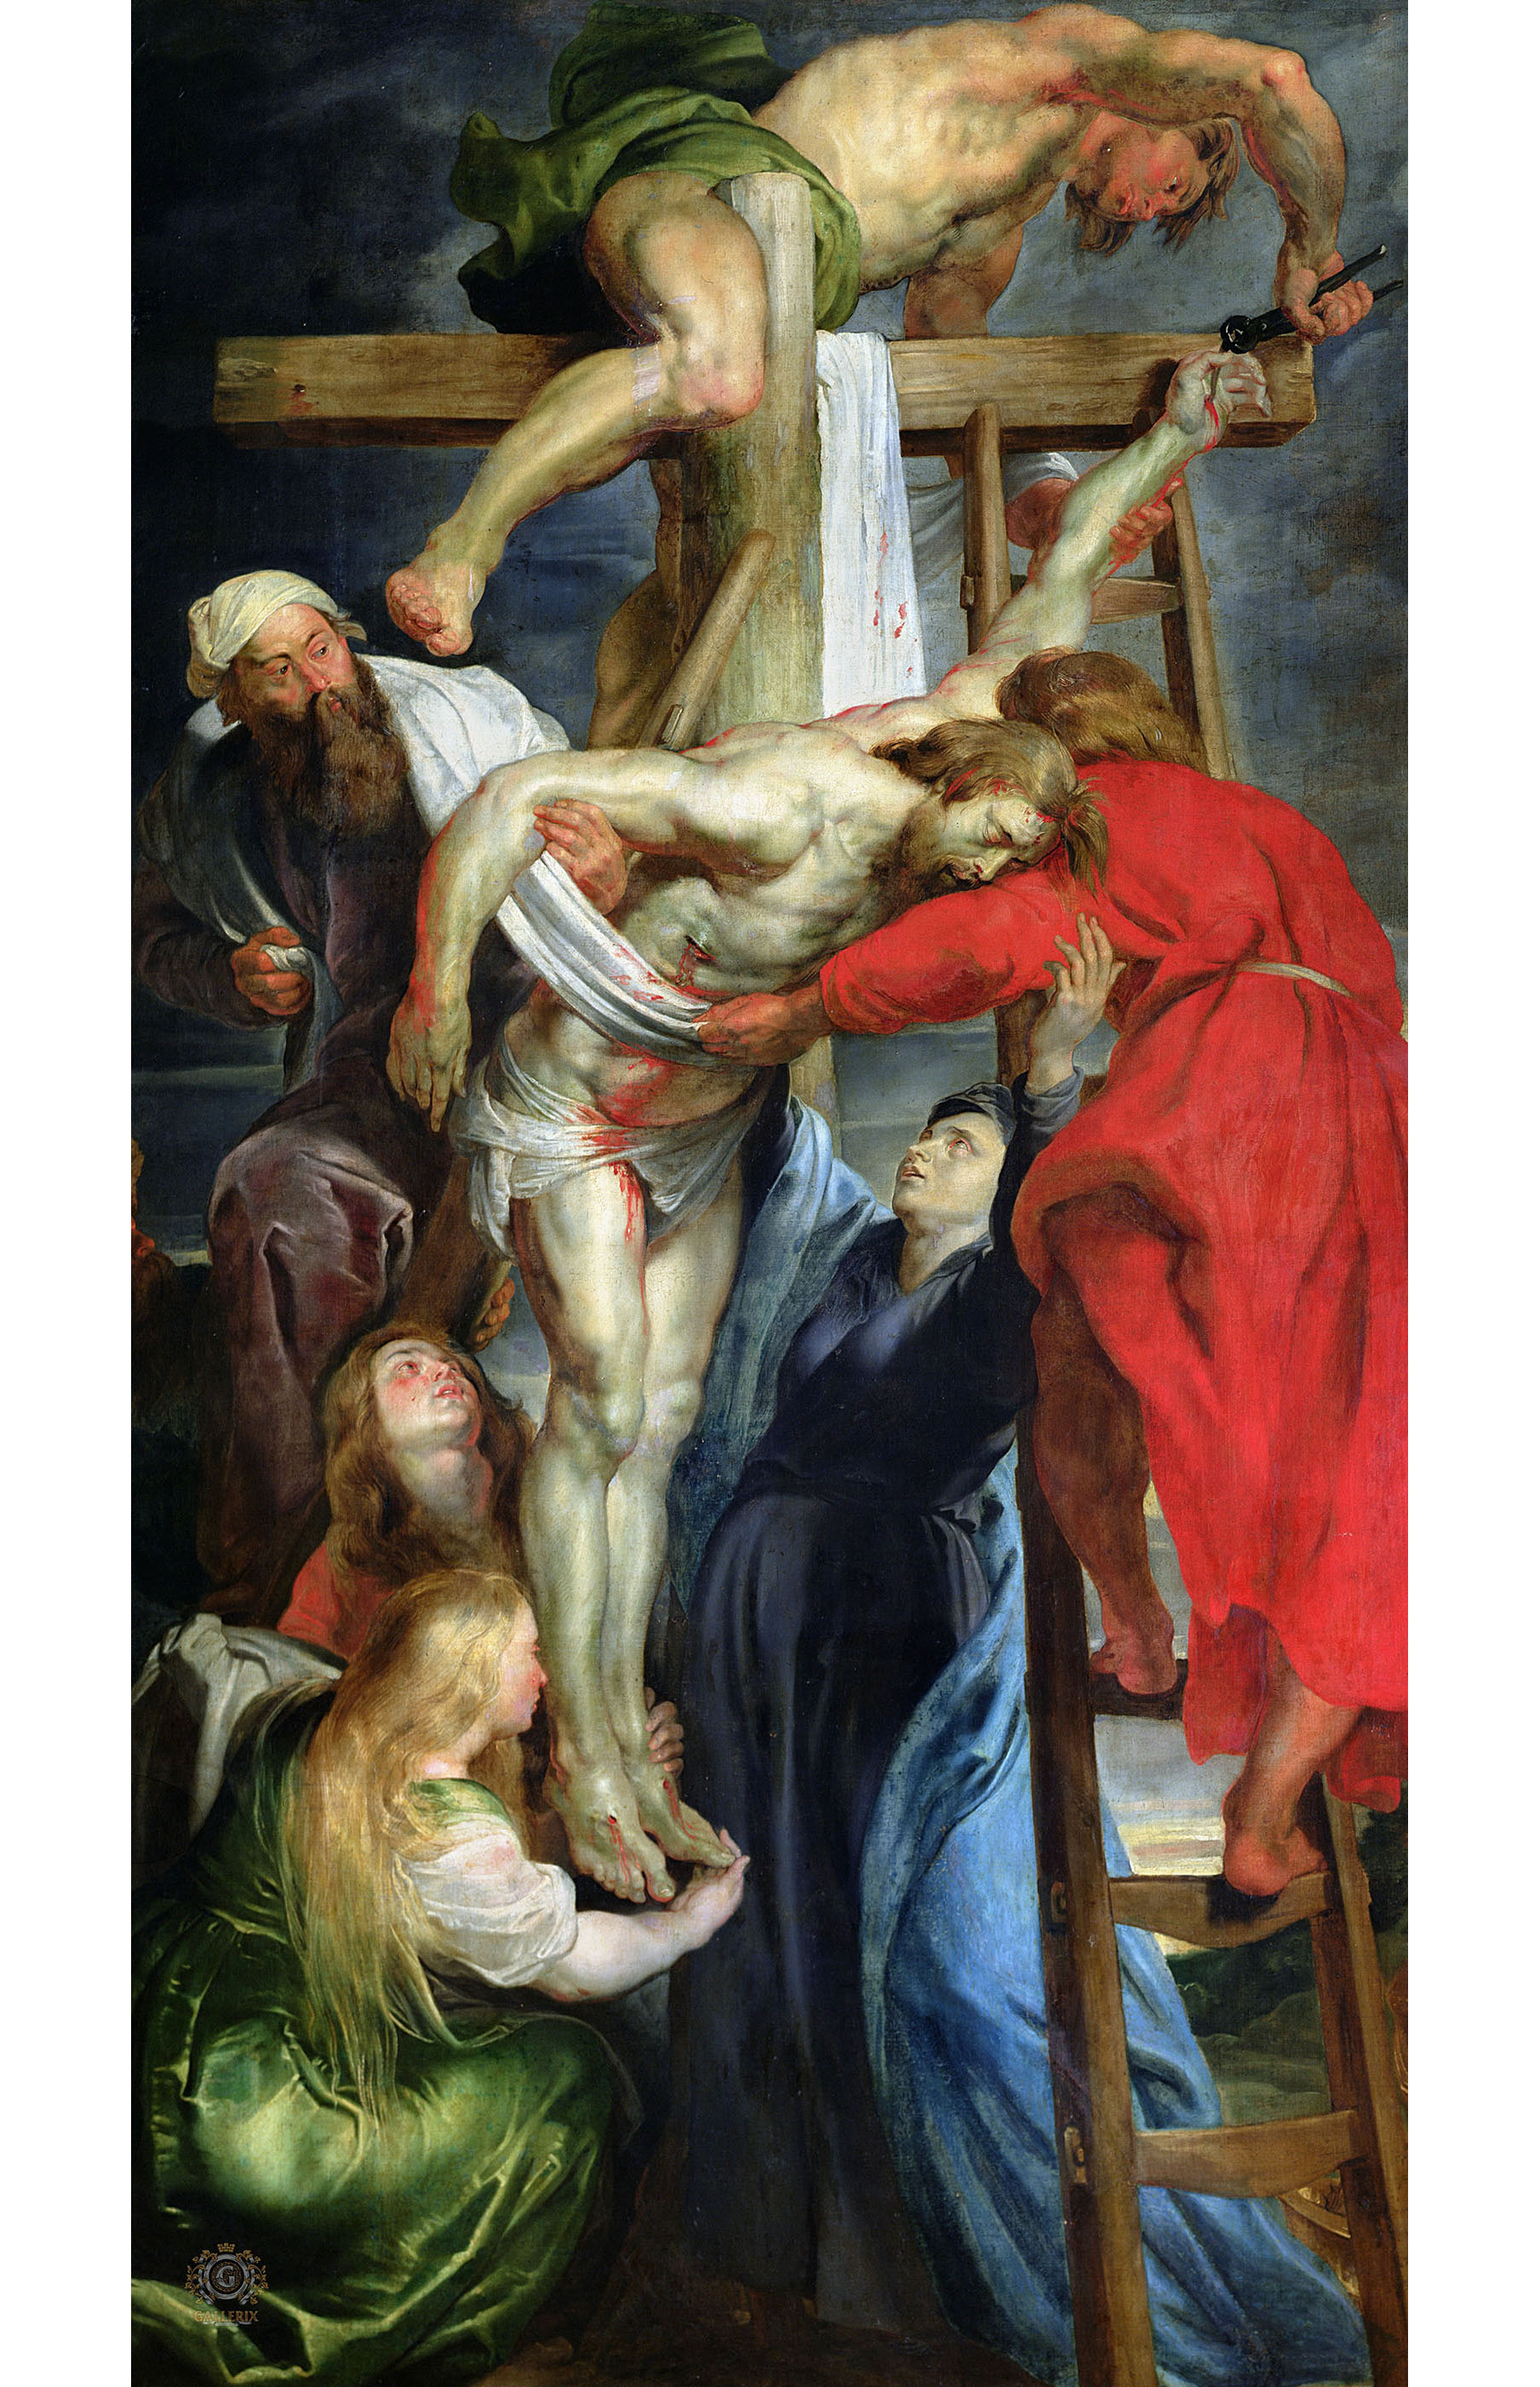 Питер Пауль Рубенс. "Снятие с креста". 1614-1615. Музей искусств, Валансьенн.